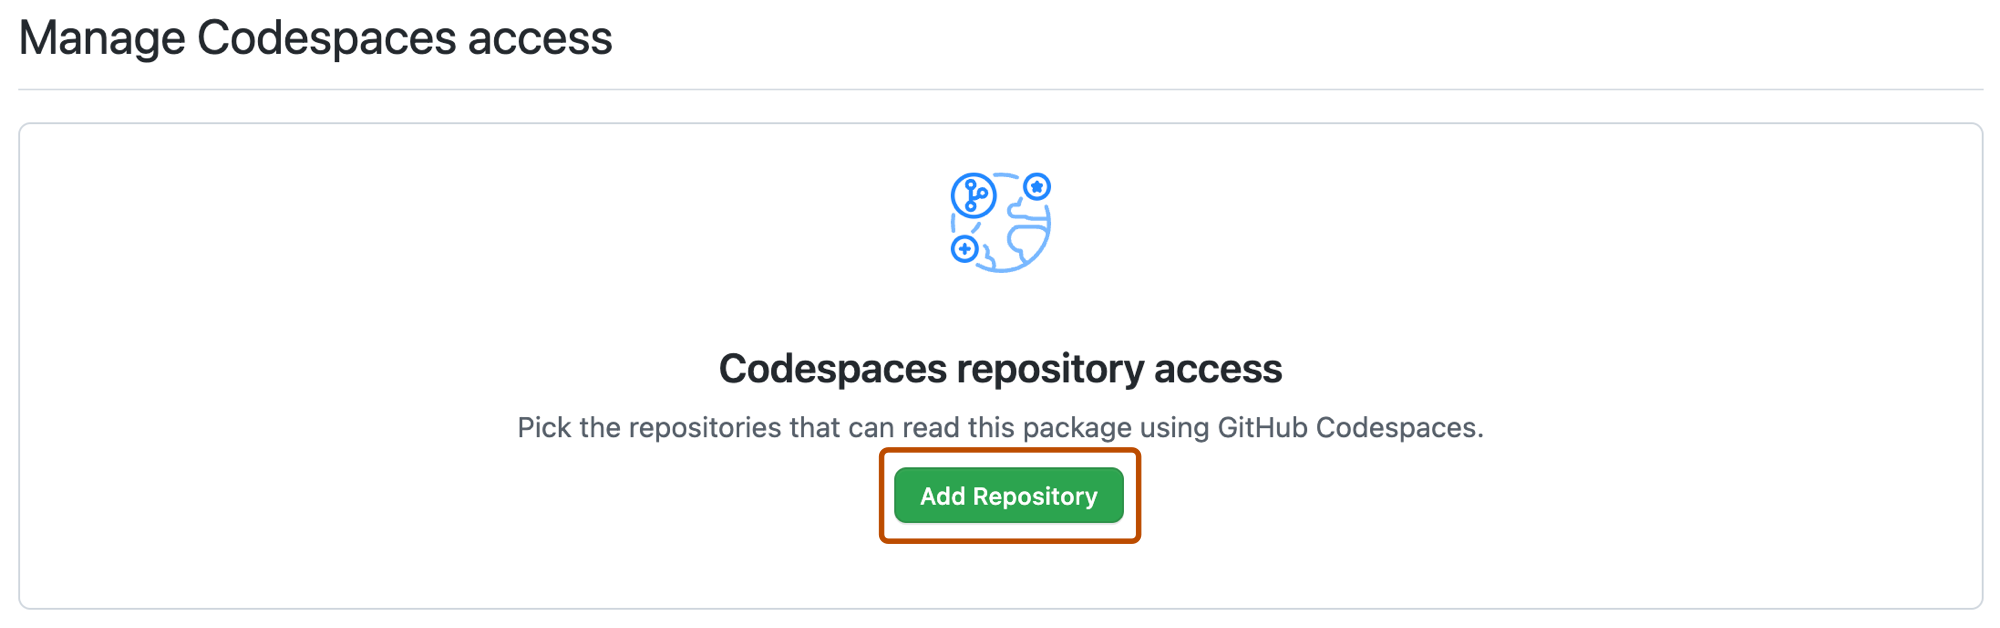 Captura de pantalla de la sección "Administrar el acceso a Codespaces" de la página de configuración del paquete. El botón "Agregar repositorio" está resaltado con un contorno naranja.